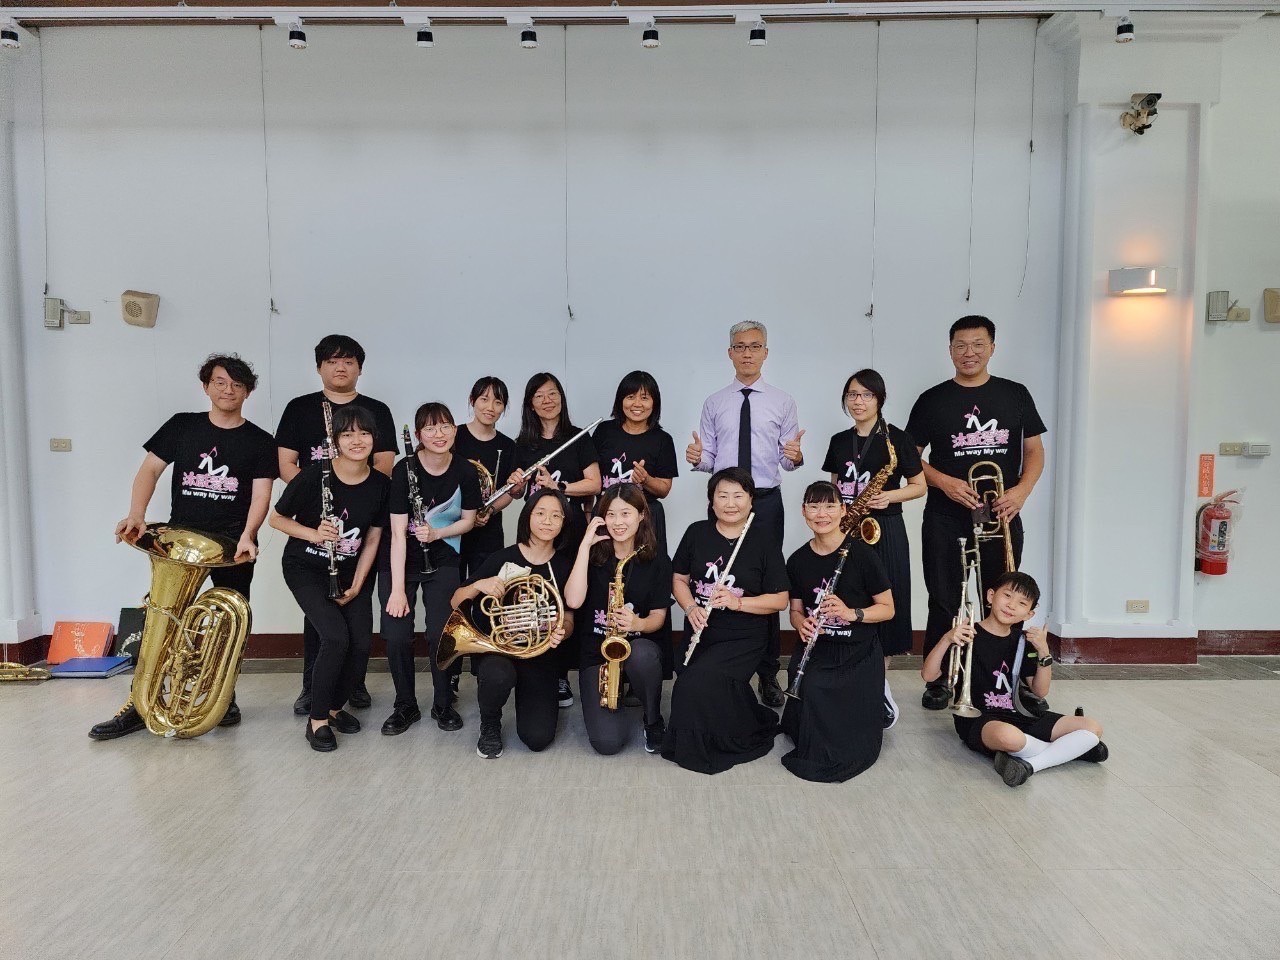 國文、合唱、指揮和管樂都是最愛，楊德威老師邀請愛樂者沐浴在管樂的音樂世界中